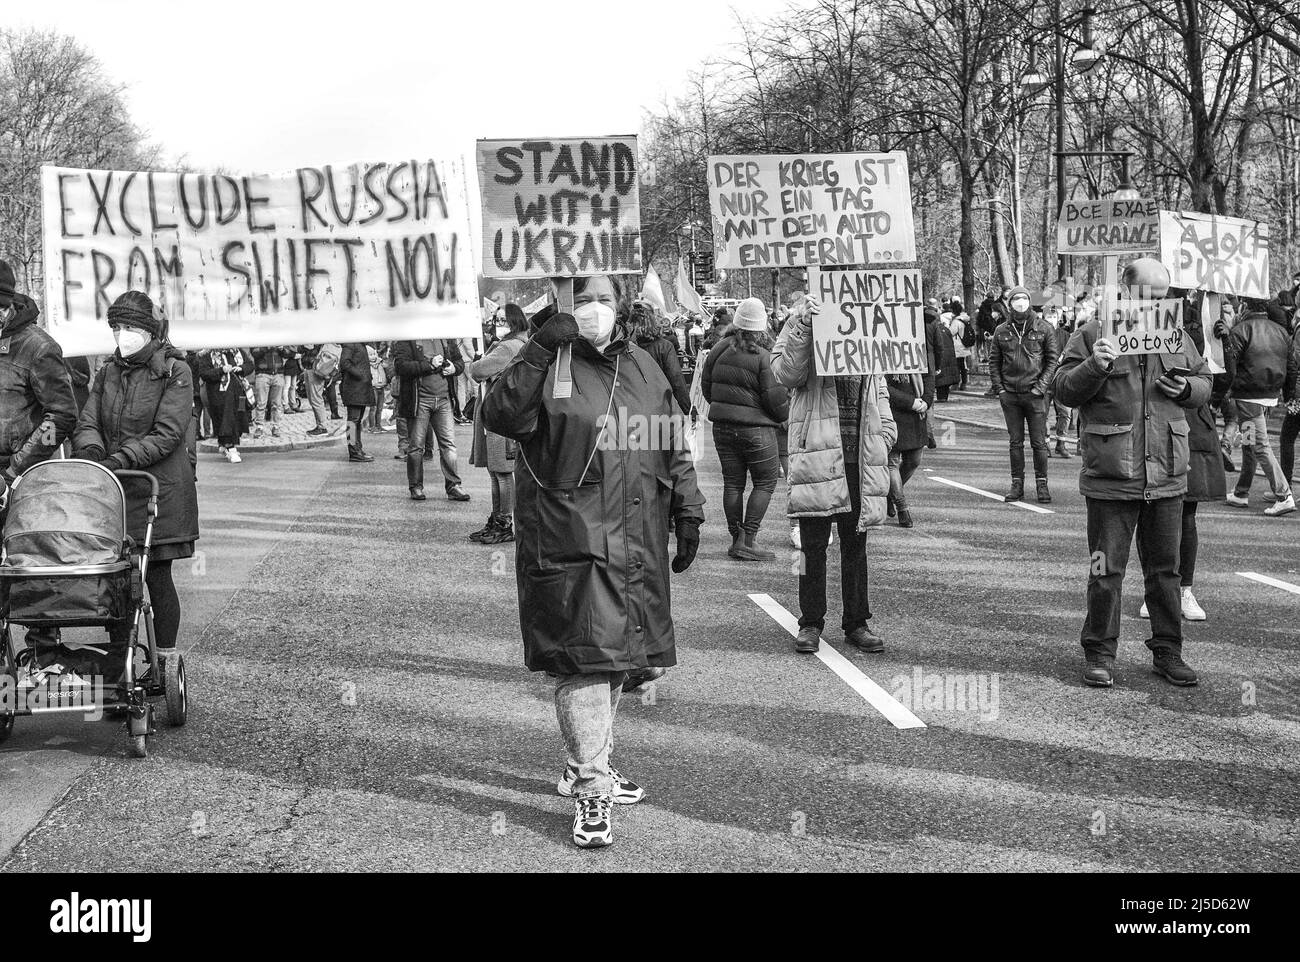 Alemania, Berlín, 27 de febrero de 2022. Manifestación contra Putin y la invasión rusa de Ucrania en Berlín el 27 de febrero de 2022. Pancartas y carteles [traducción automática] Foto de stock